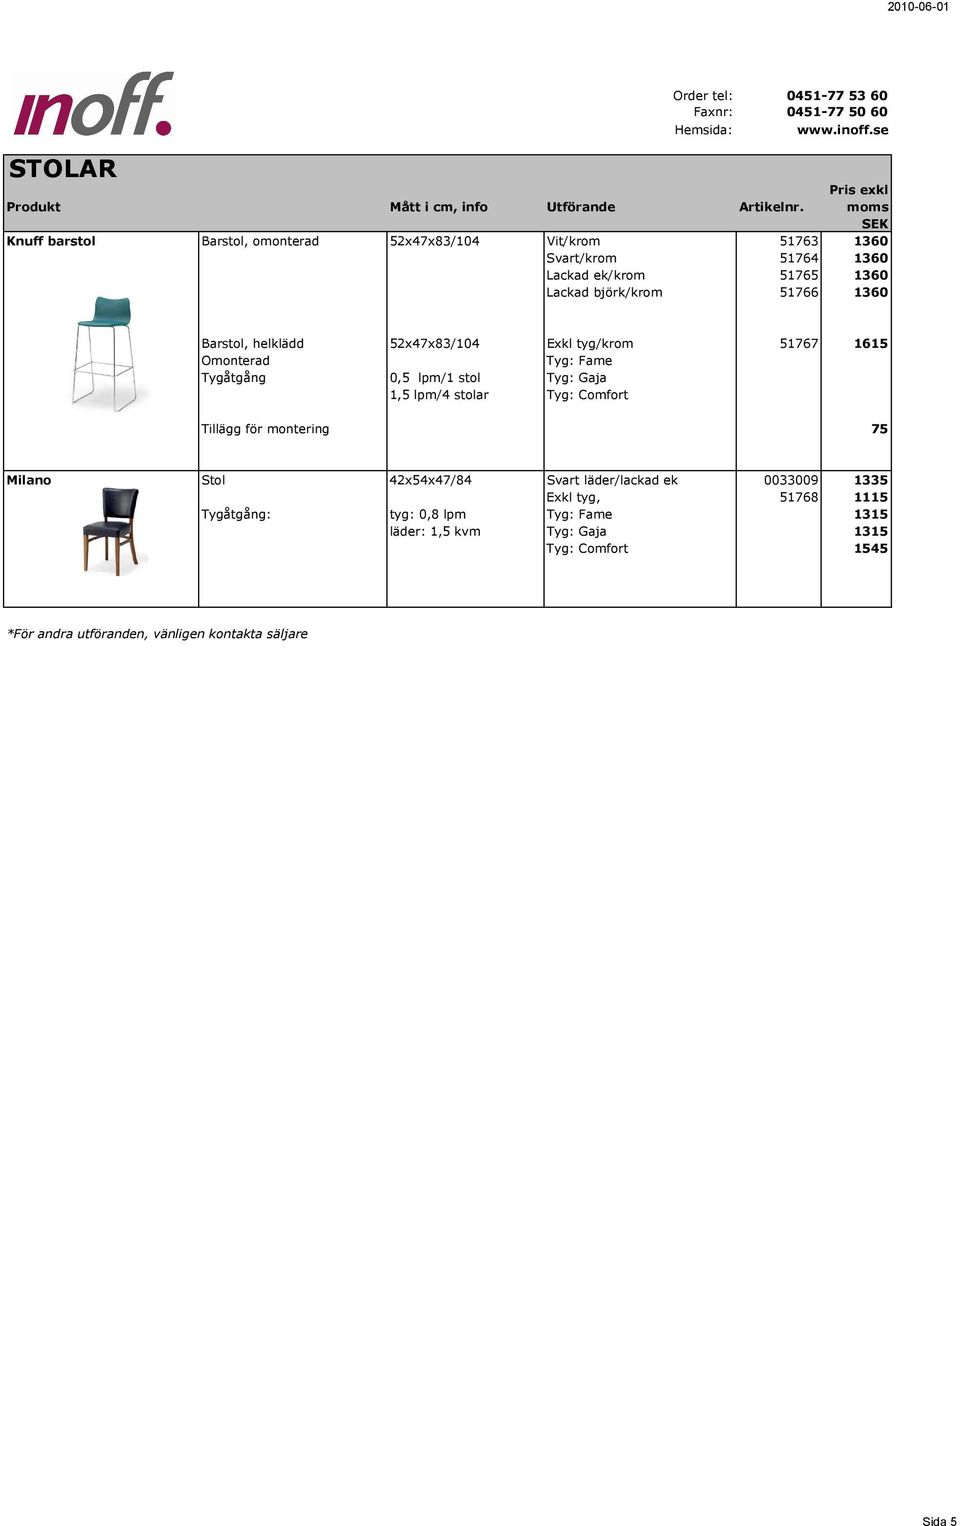 lpm/1 stol Tyg: Gaja 1,5 lpm/4 stolar Tyg: Comfort Tillägg för montering 75 Milano Stol 42x54x47/84 Svart läder/lackad ek